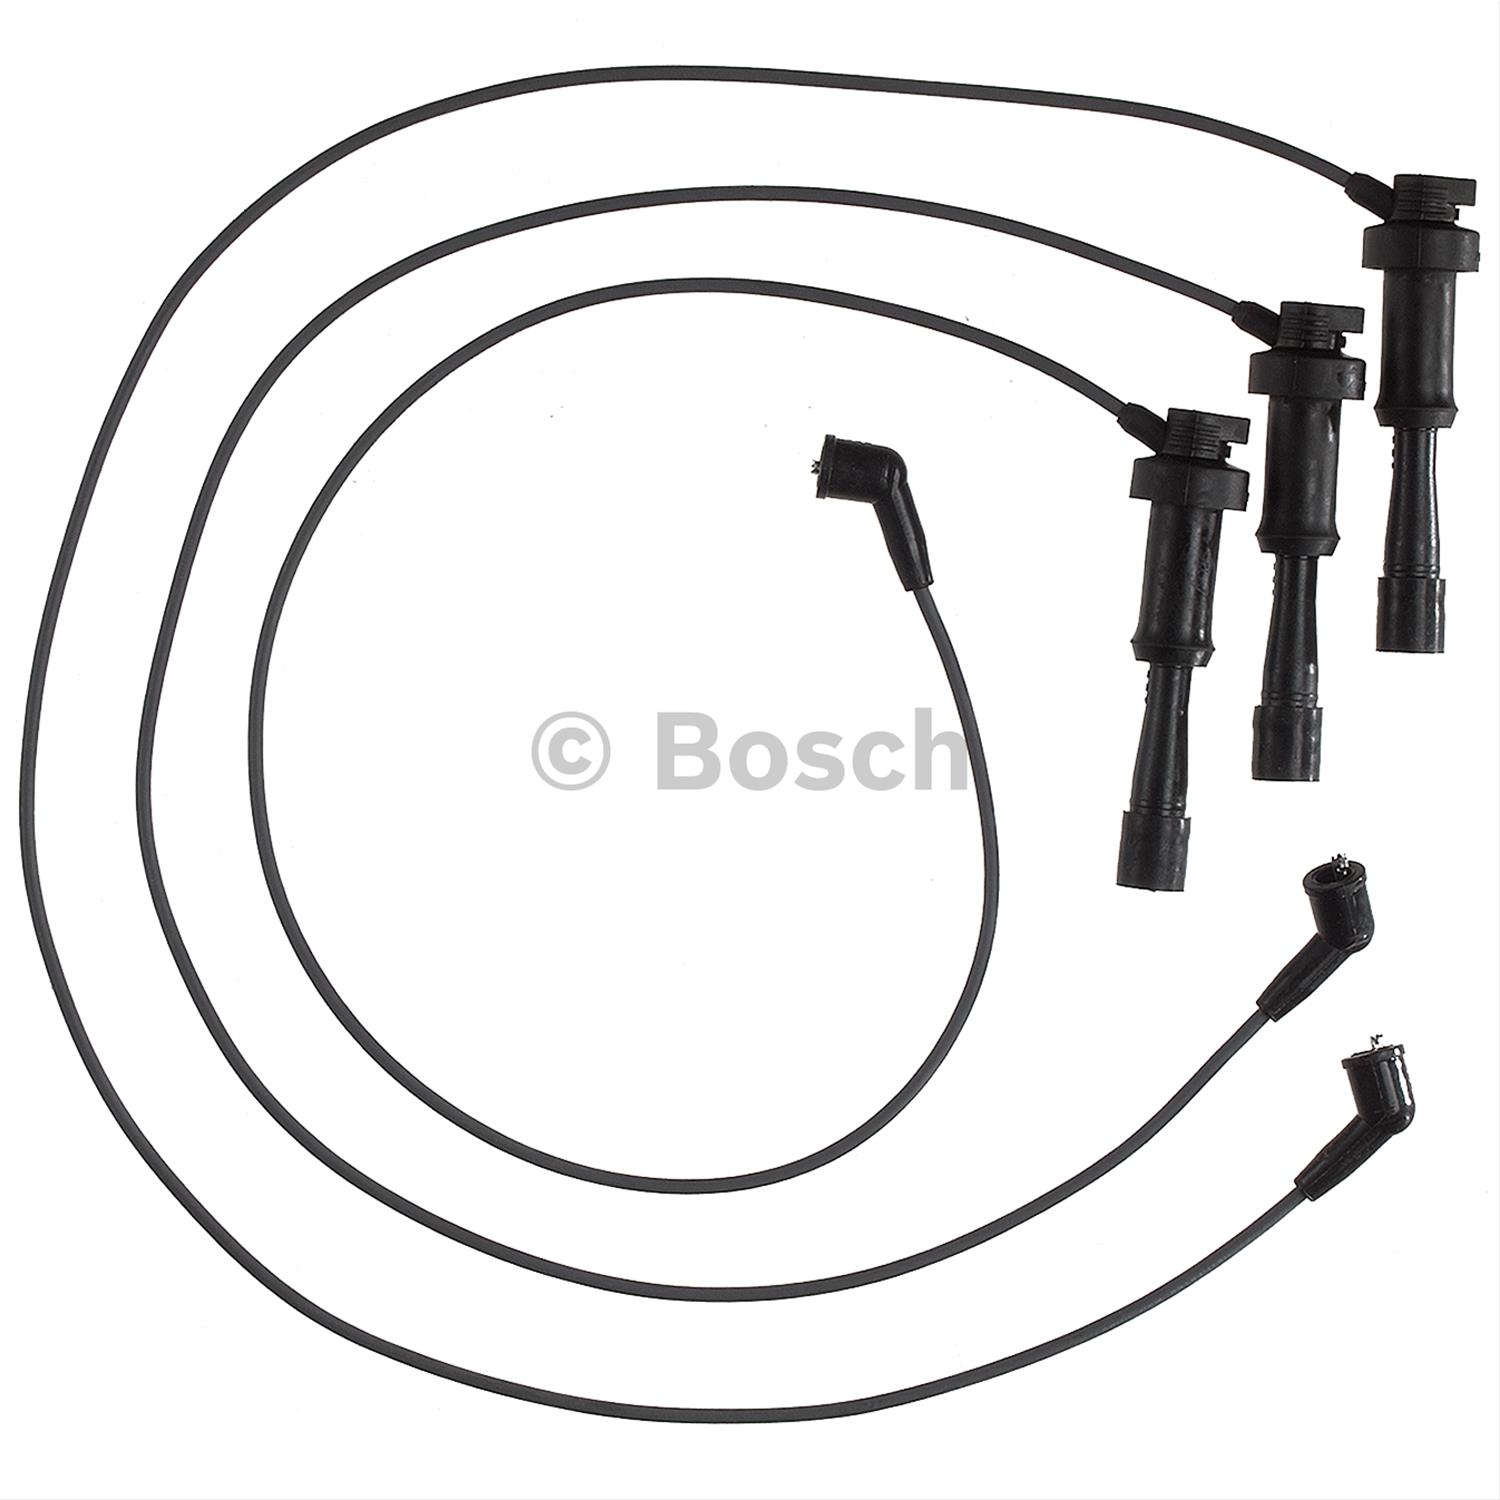 Bosch 09206 Premium Spark Plug Wire Set 